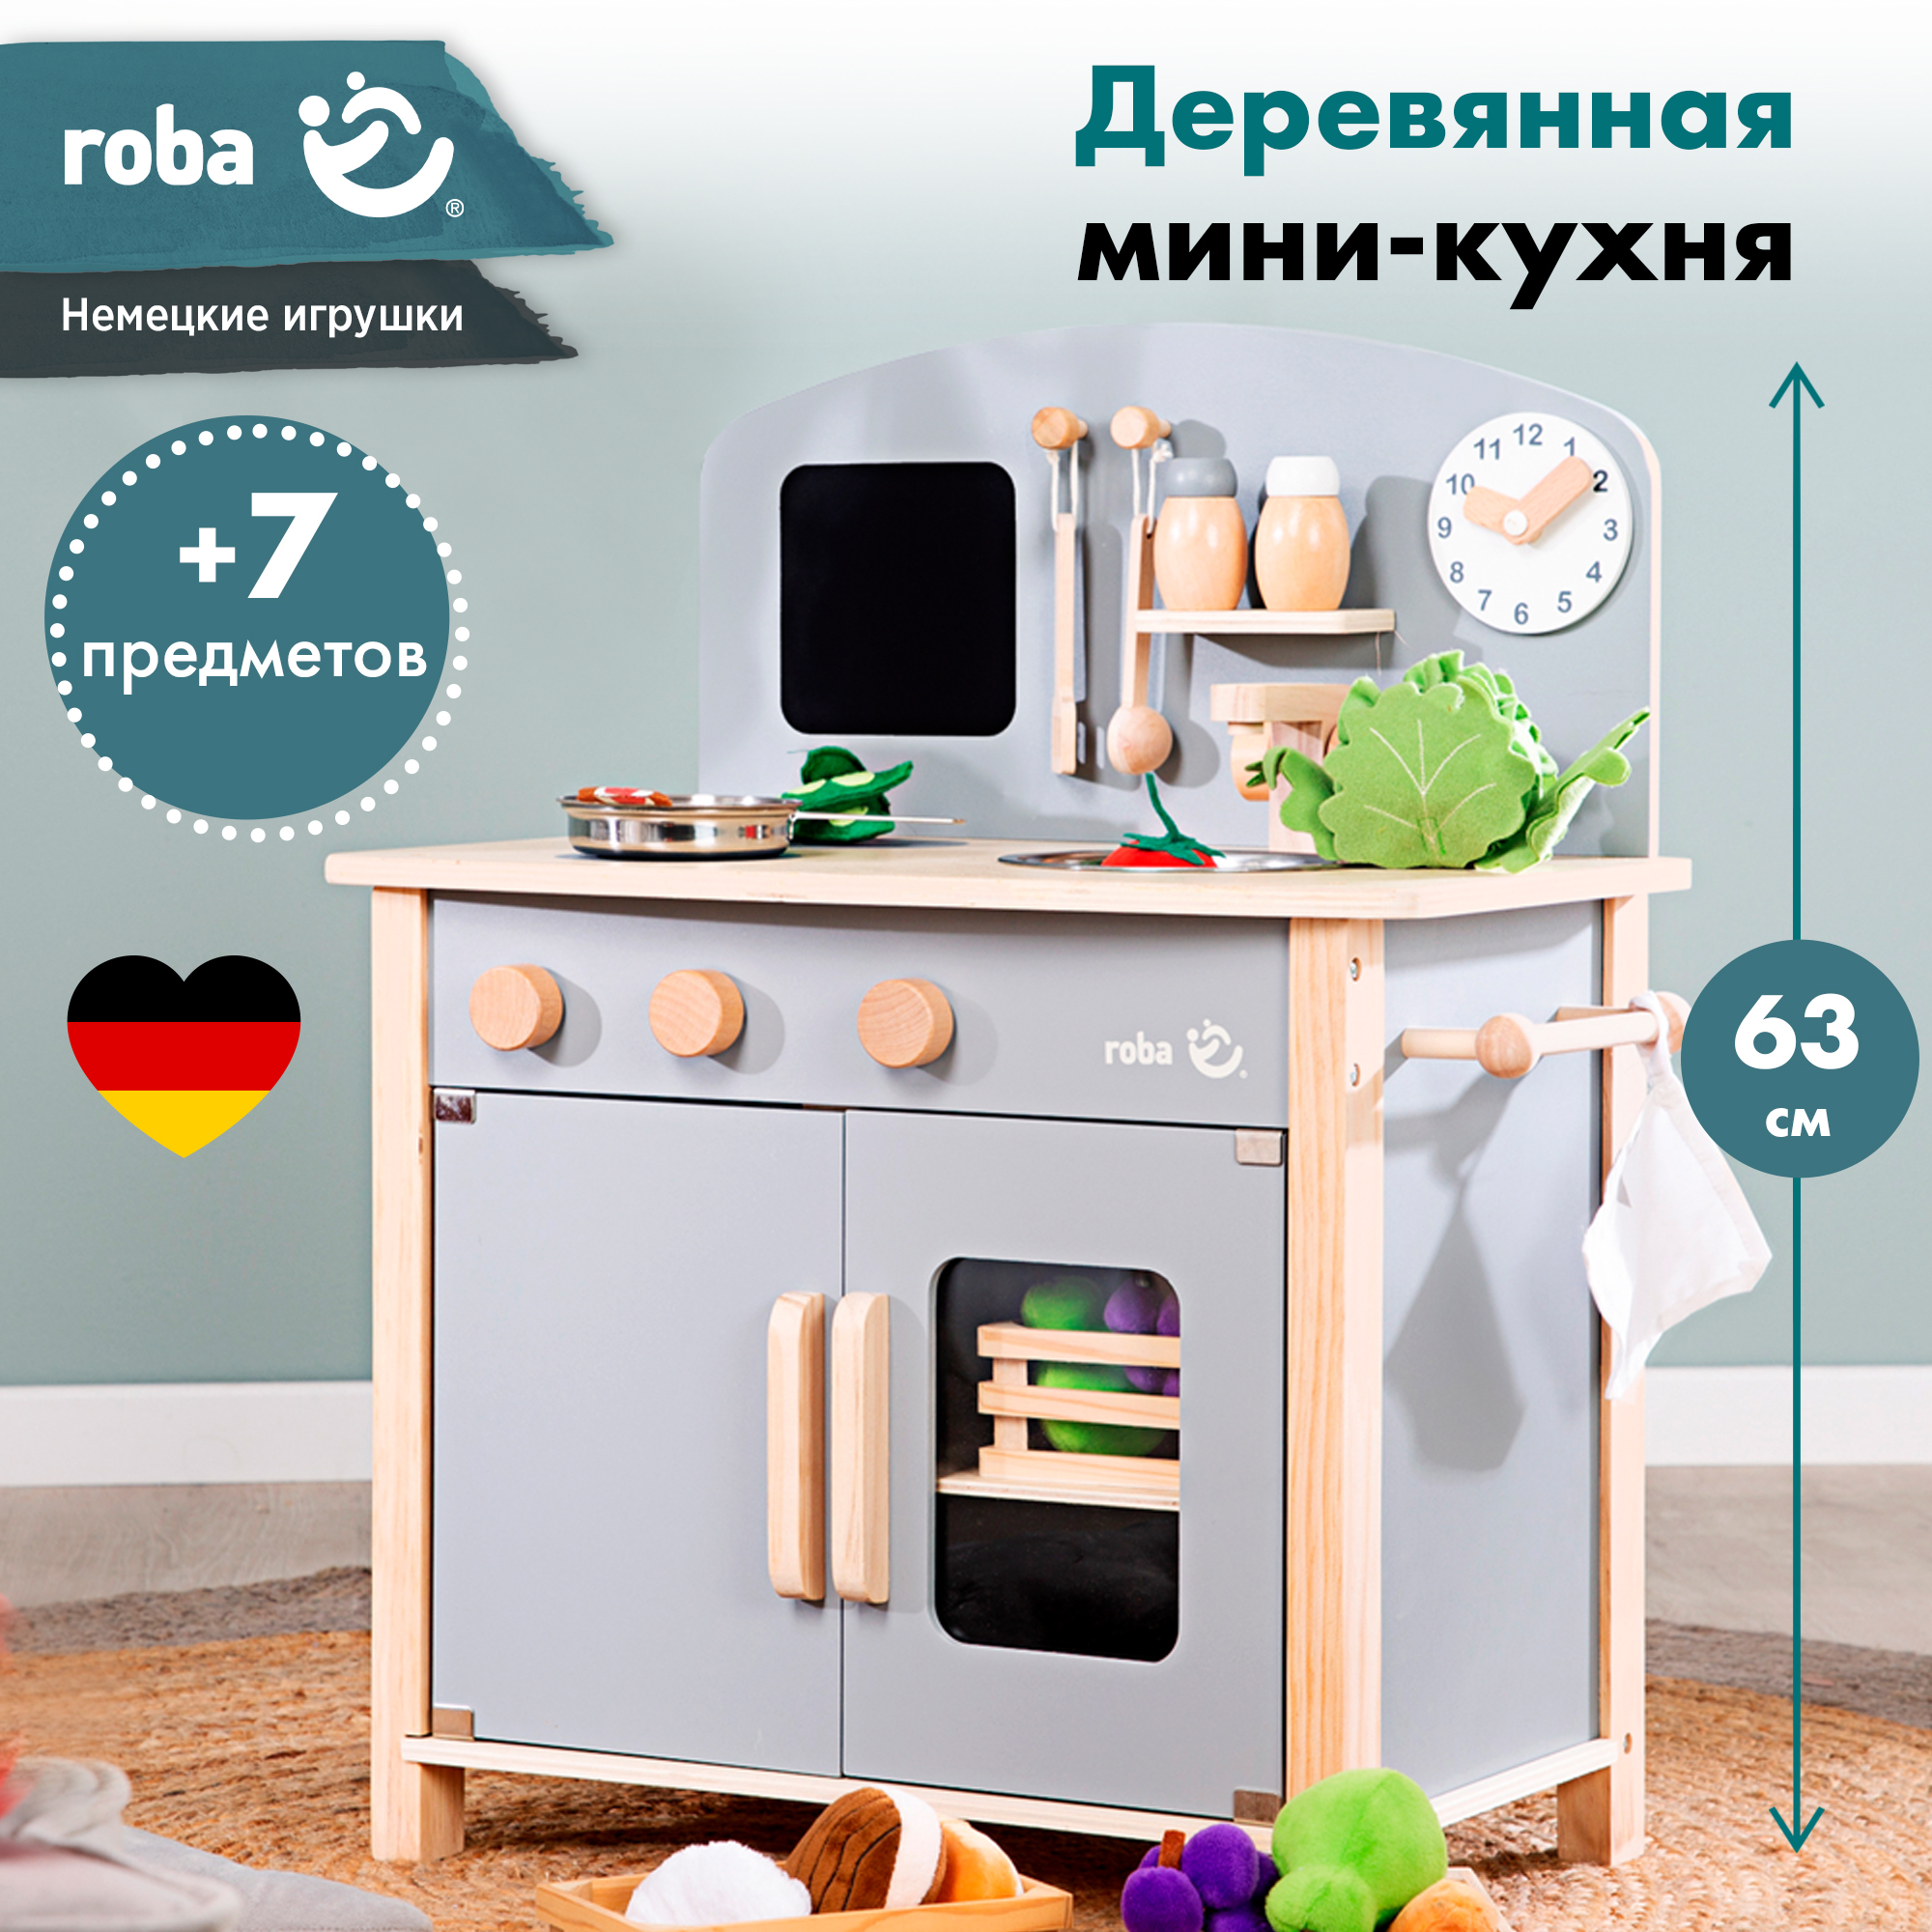 Кухня детская игровая Roba c 2 конфорками, раковиной, краном и аксессуарами, серый roba скамья детская